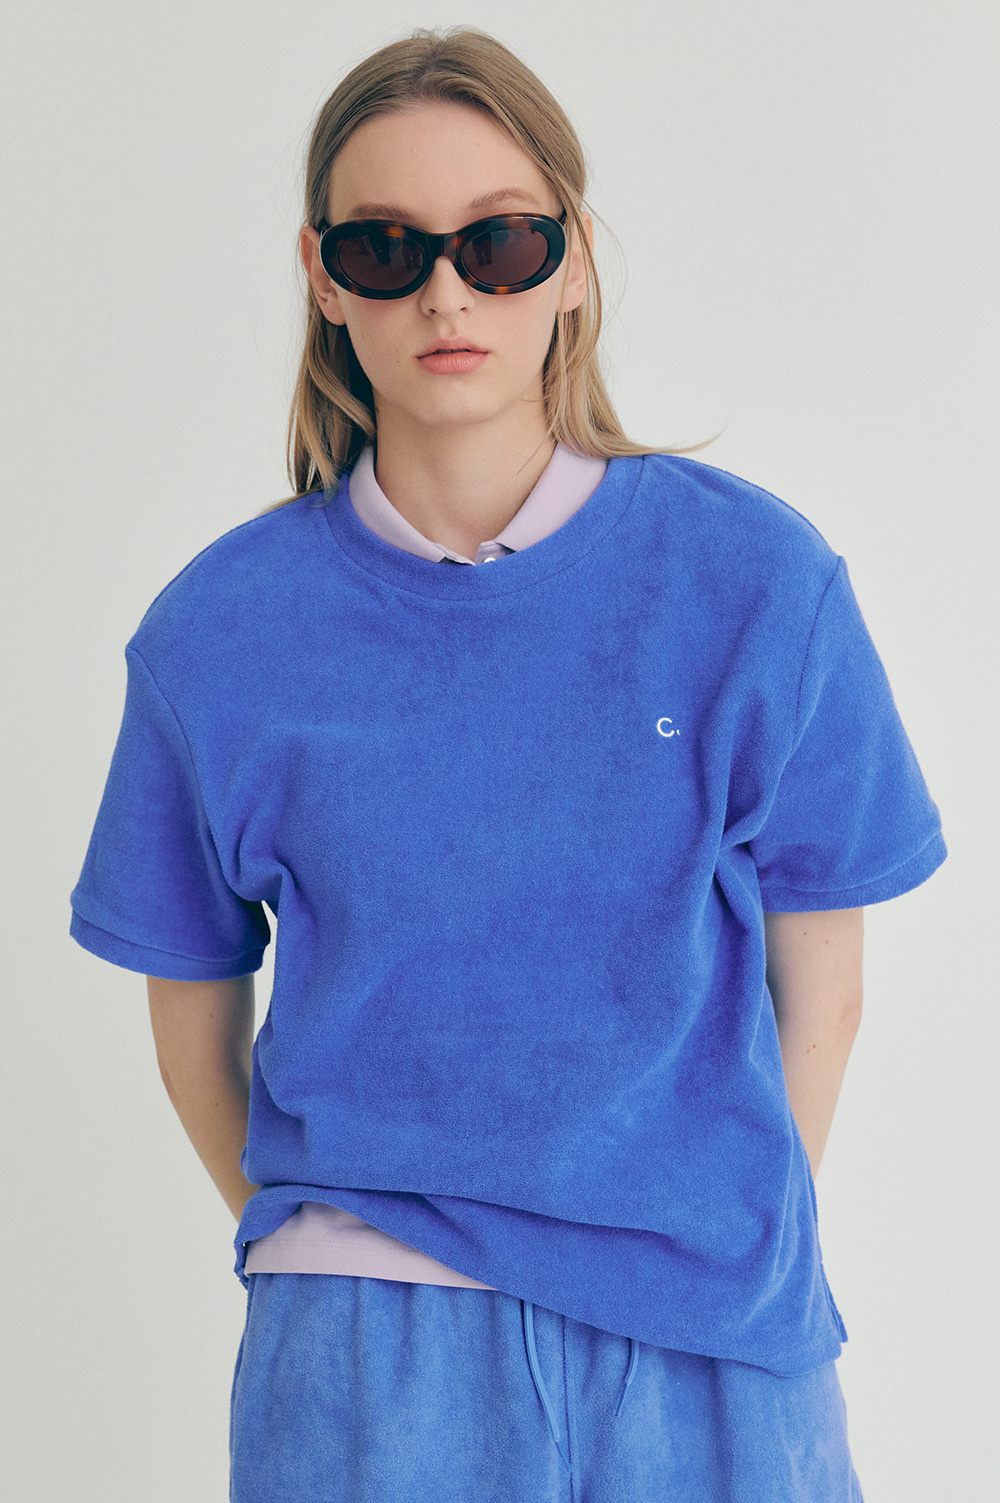 clove - [22SS clove] Terry T-Shirt_Women (Blue)